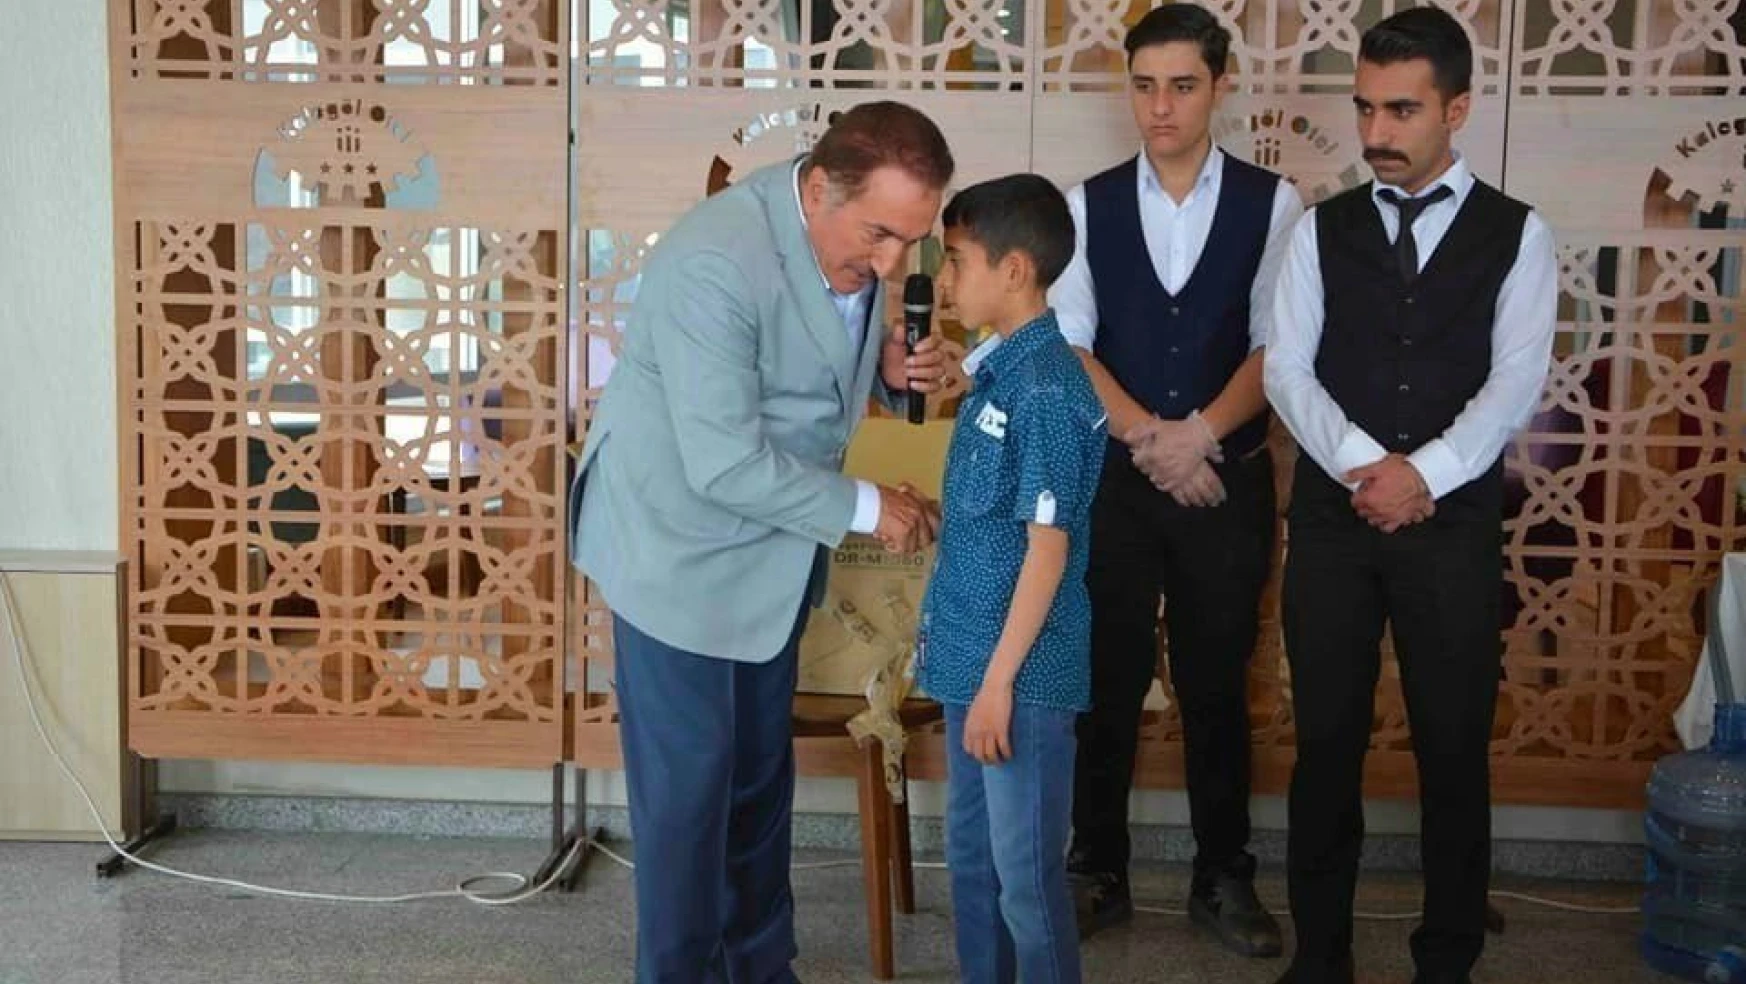 Belediye başkanı Akdemir'den gençlere övgü
